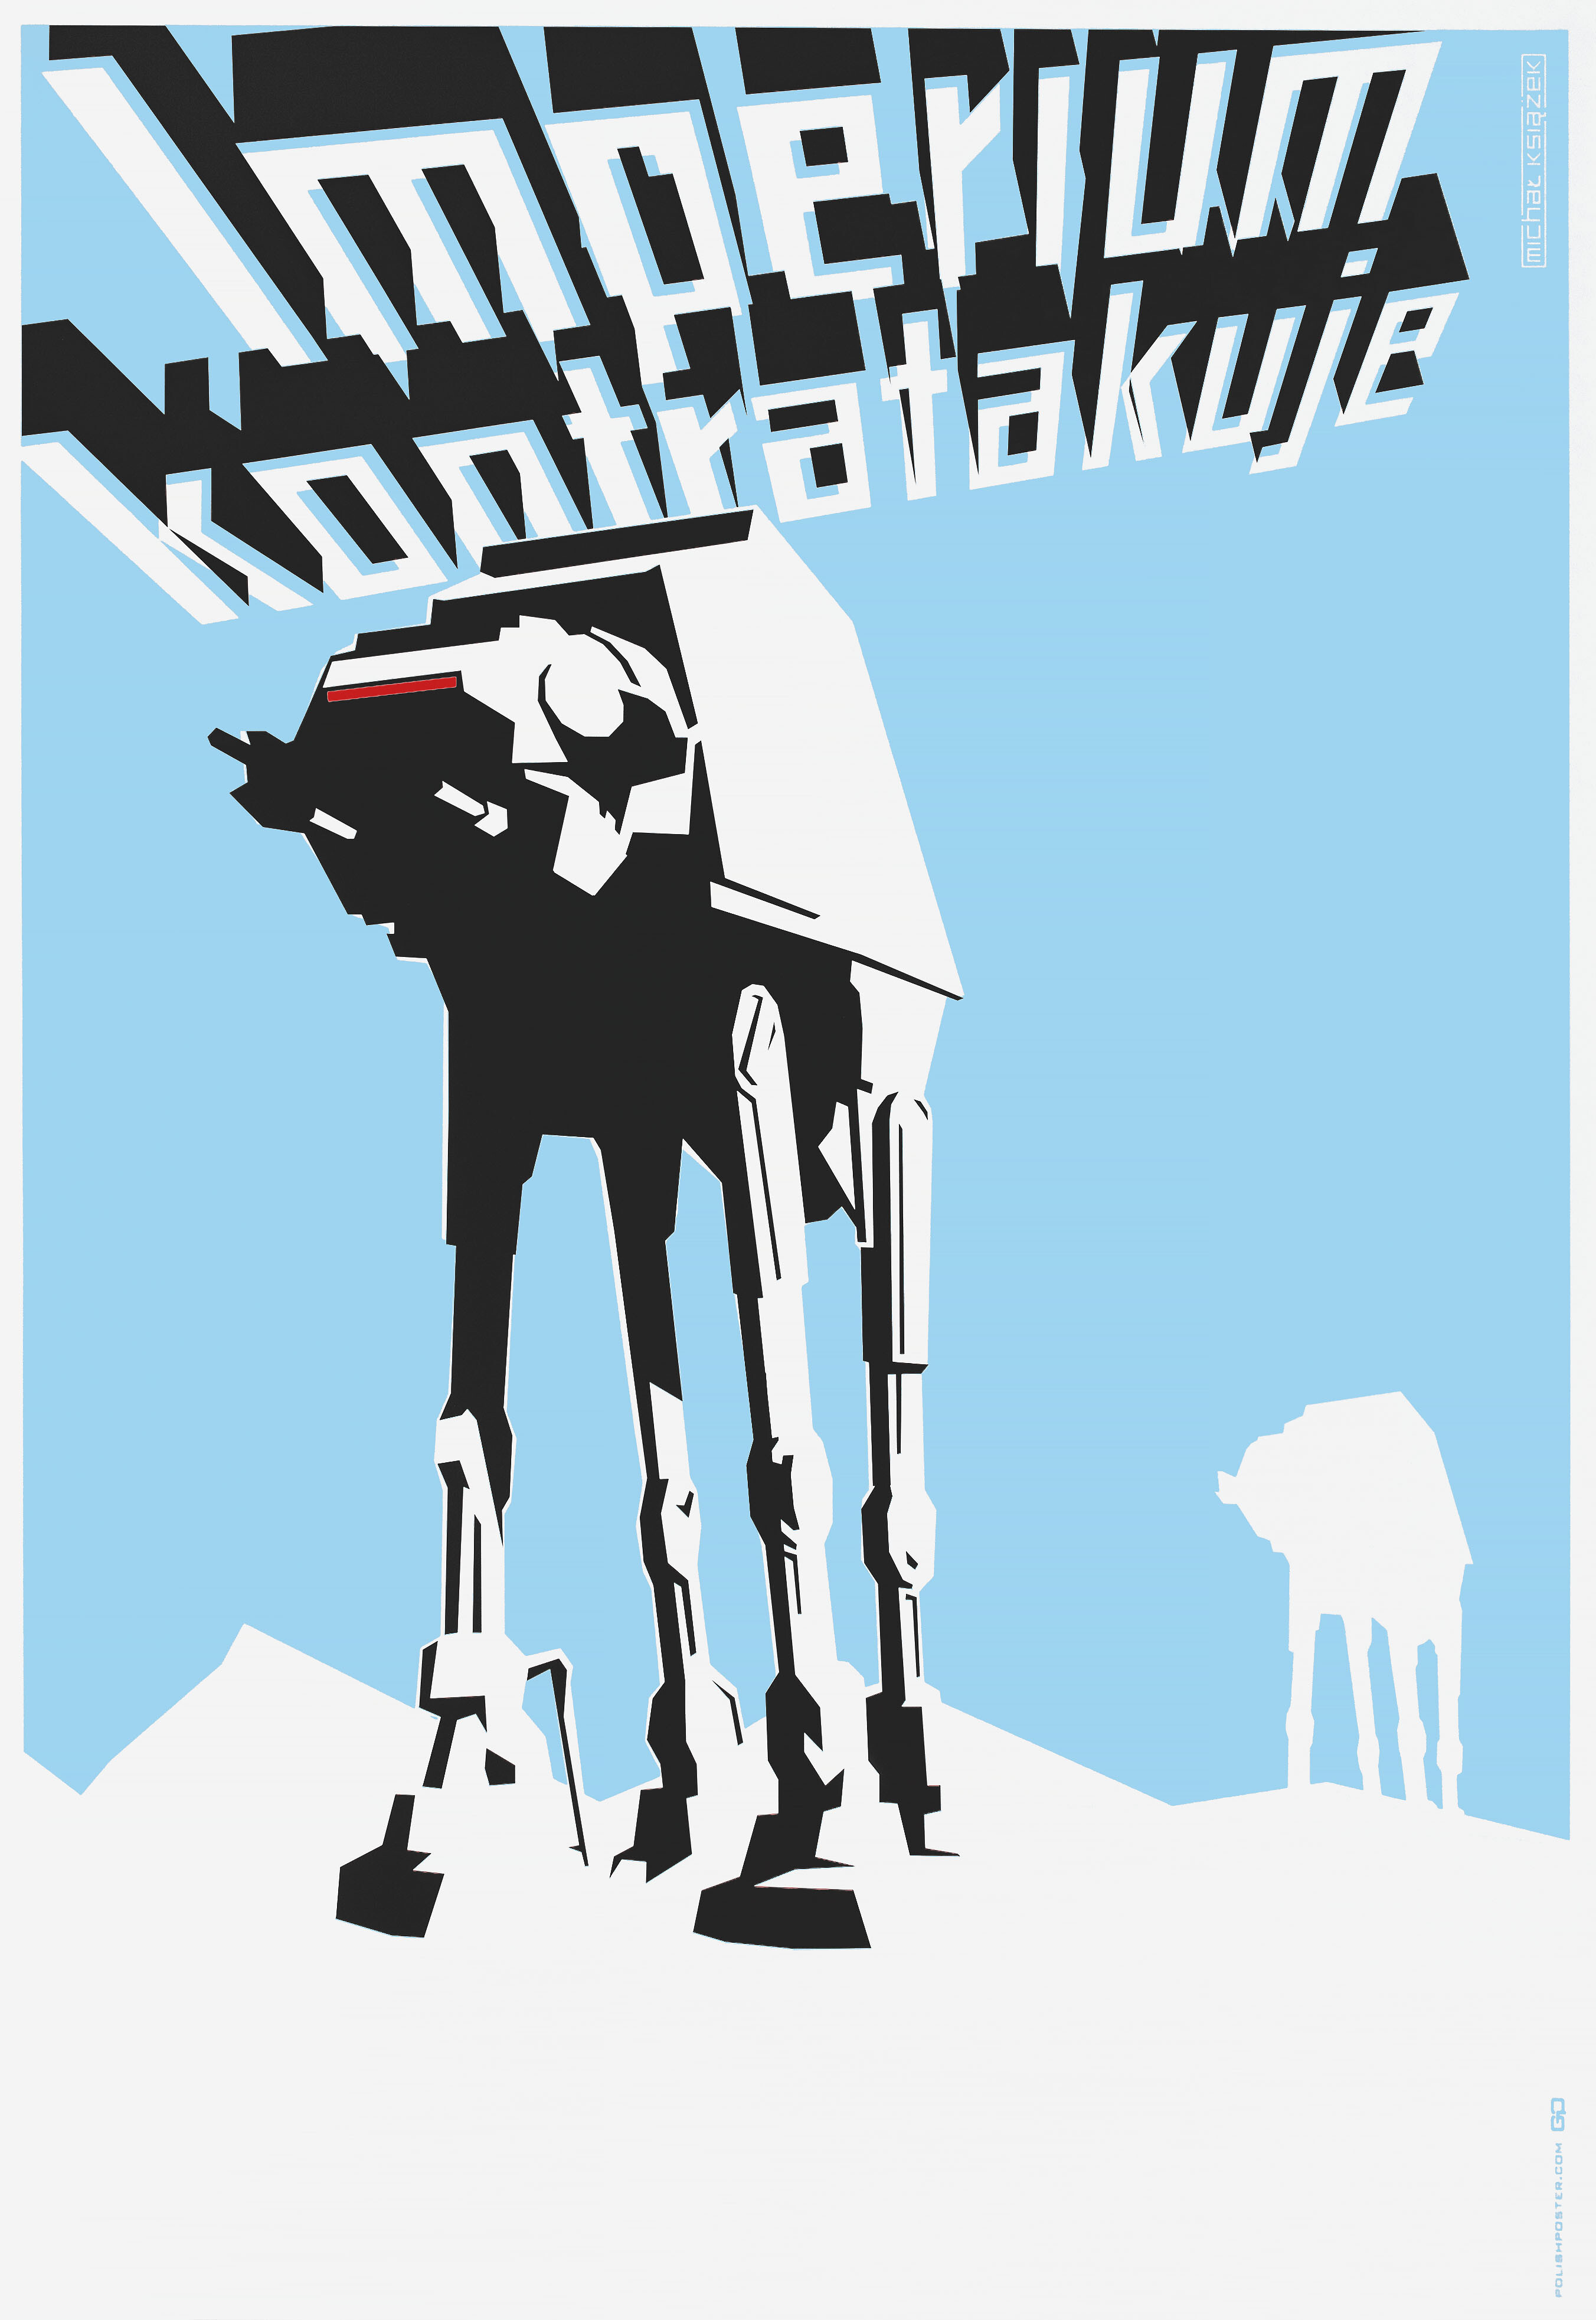 Звёздные войны: Эпизод 5 – Империя наносит ответный удар (The Empire Strikes Back, 1980), режиссёр Ирвин Кершнер, польский плакат к фильму, 2015 год, автор Михал Ксязек